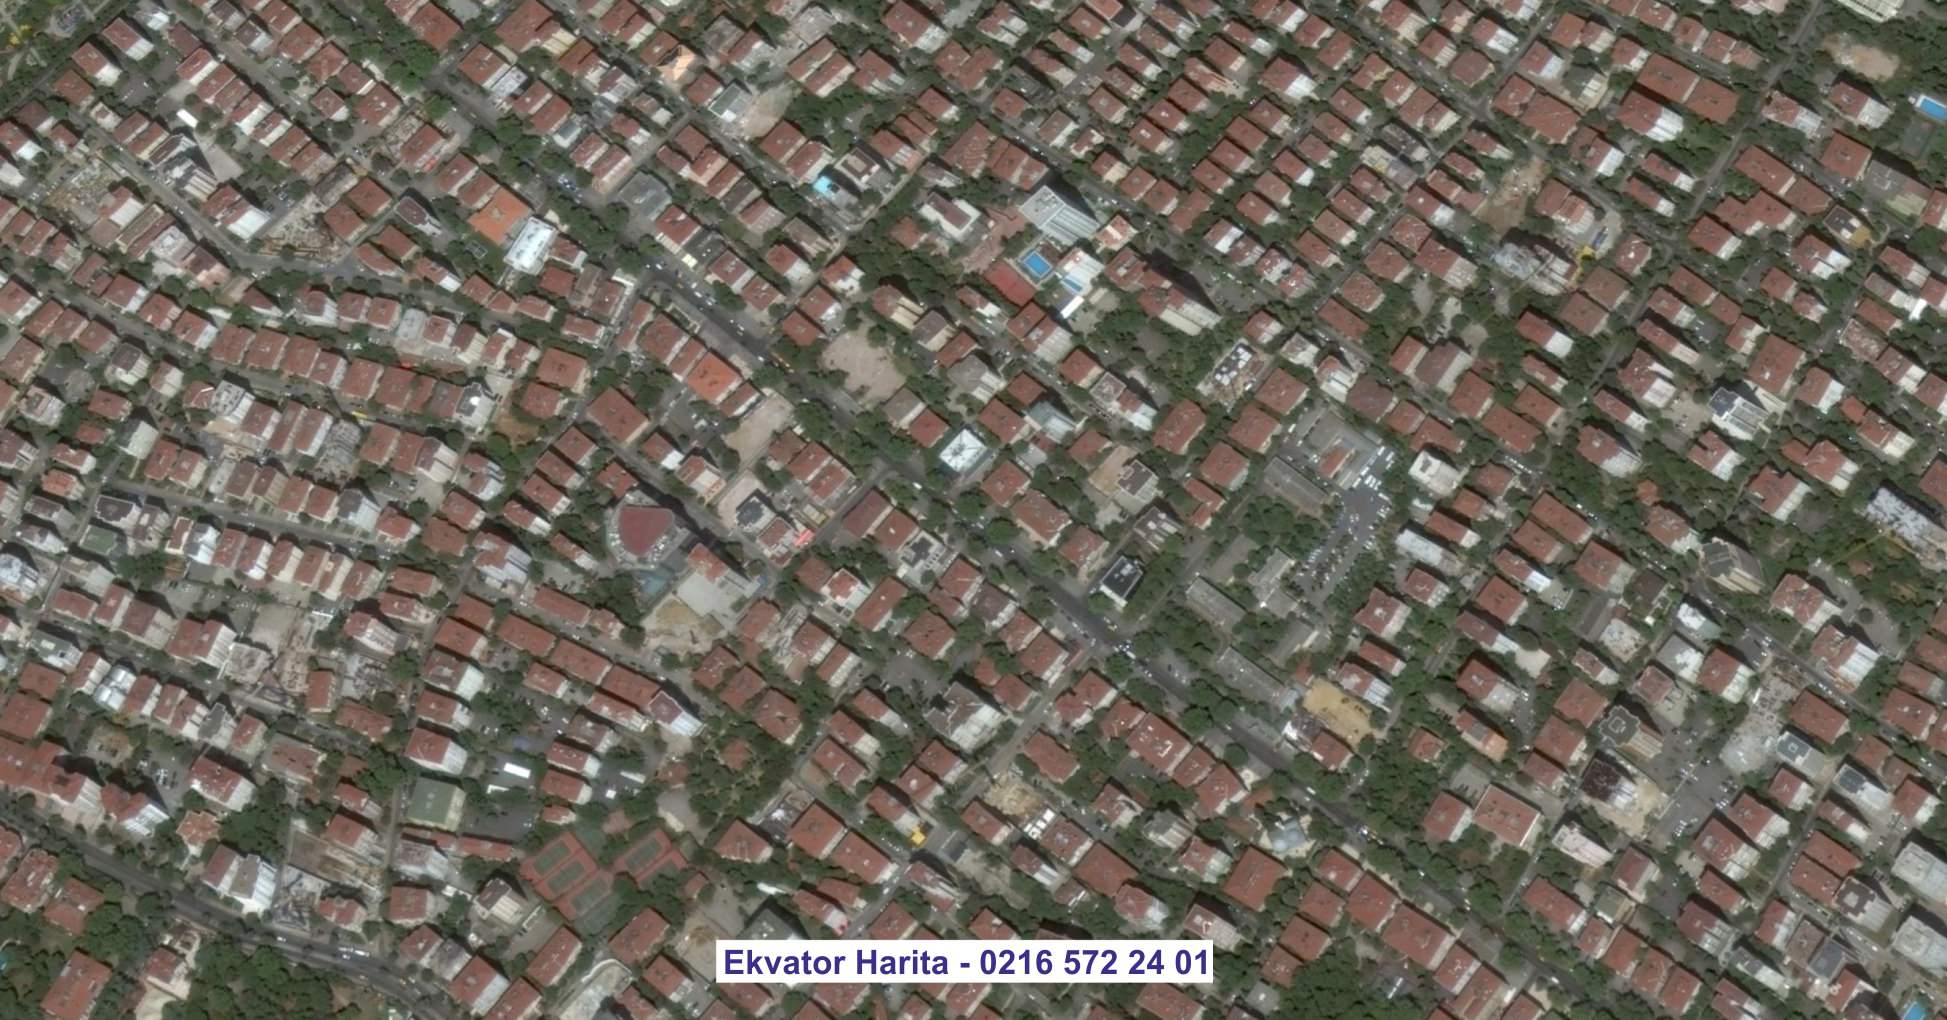 Karşıyaka Uydu Görüntüsü Örnek Fotoğrafı